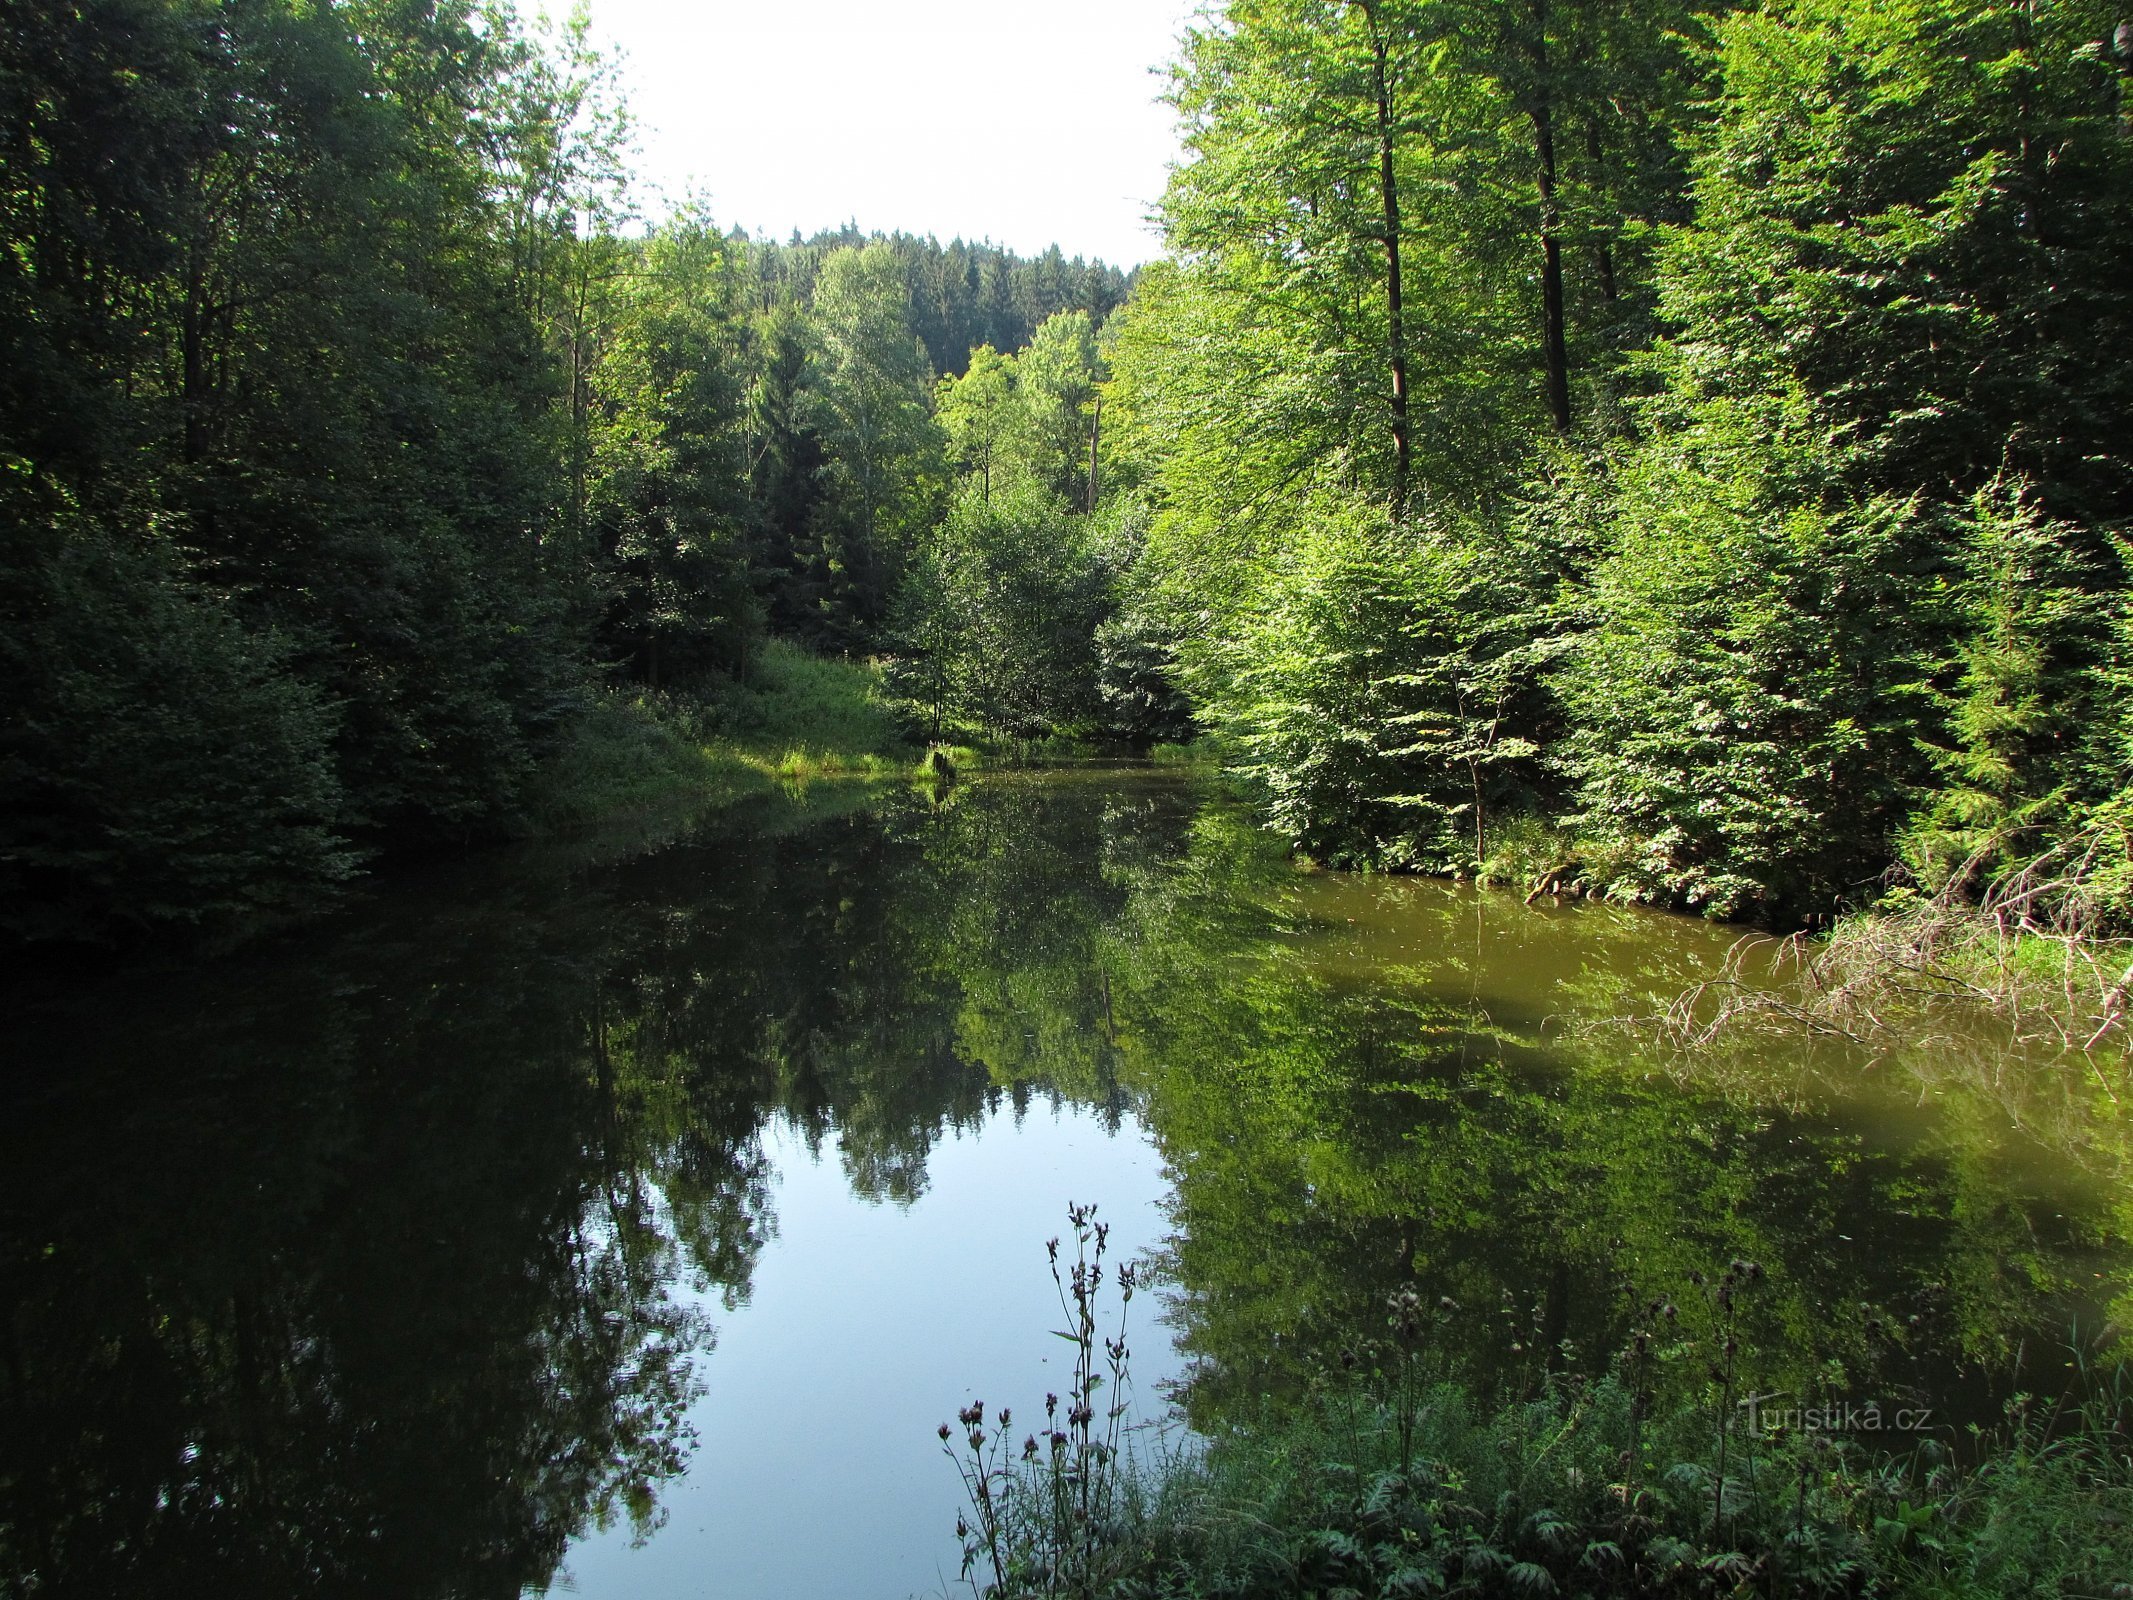 Wasser unter Čerňava